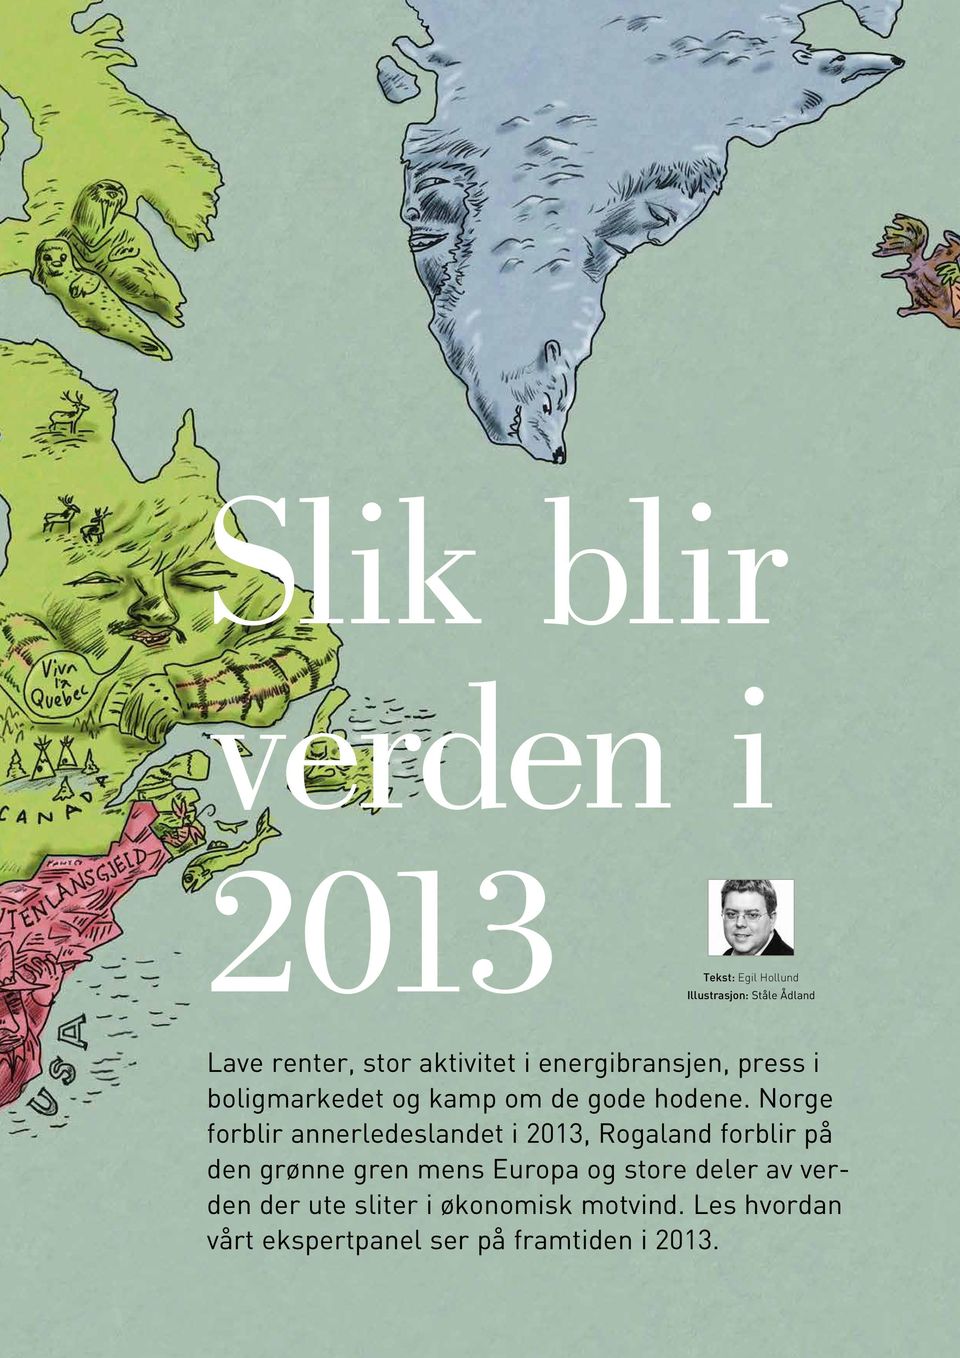 Norge forblir annerledeslandet i 2013, Rogaland forblir på den grønne gren mens Europa og